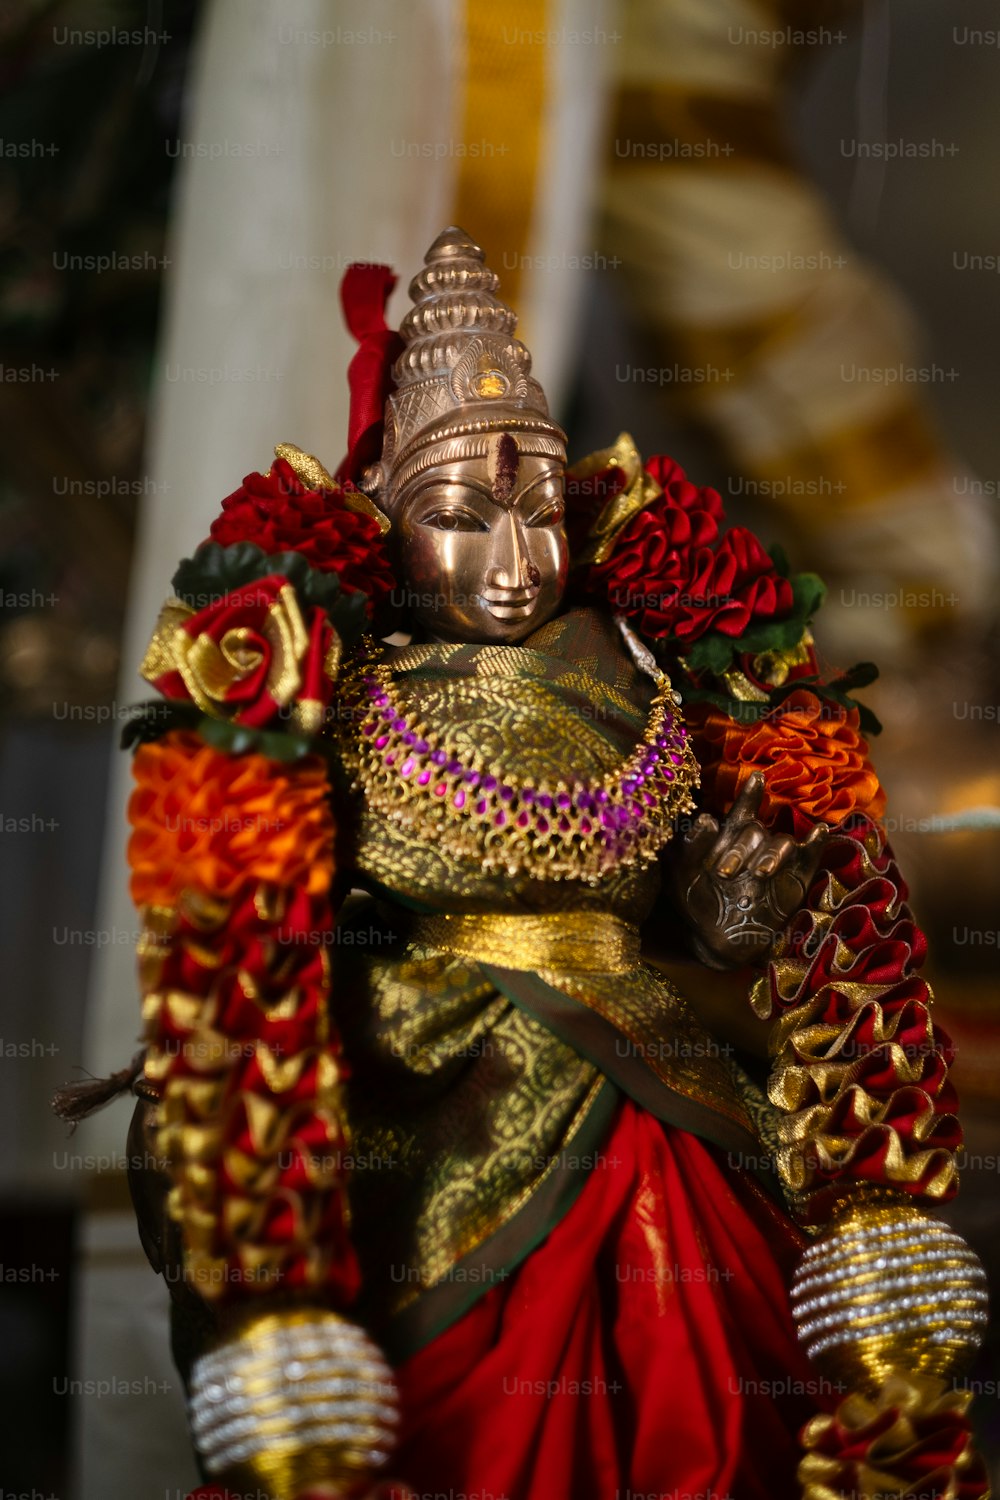 eine Statue einer Person in einem rot-goldenen Outfit